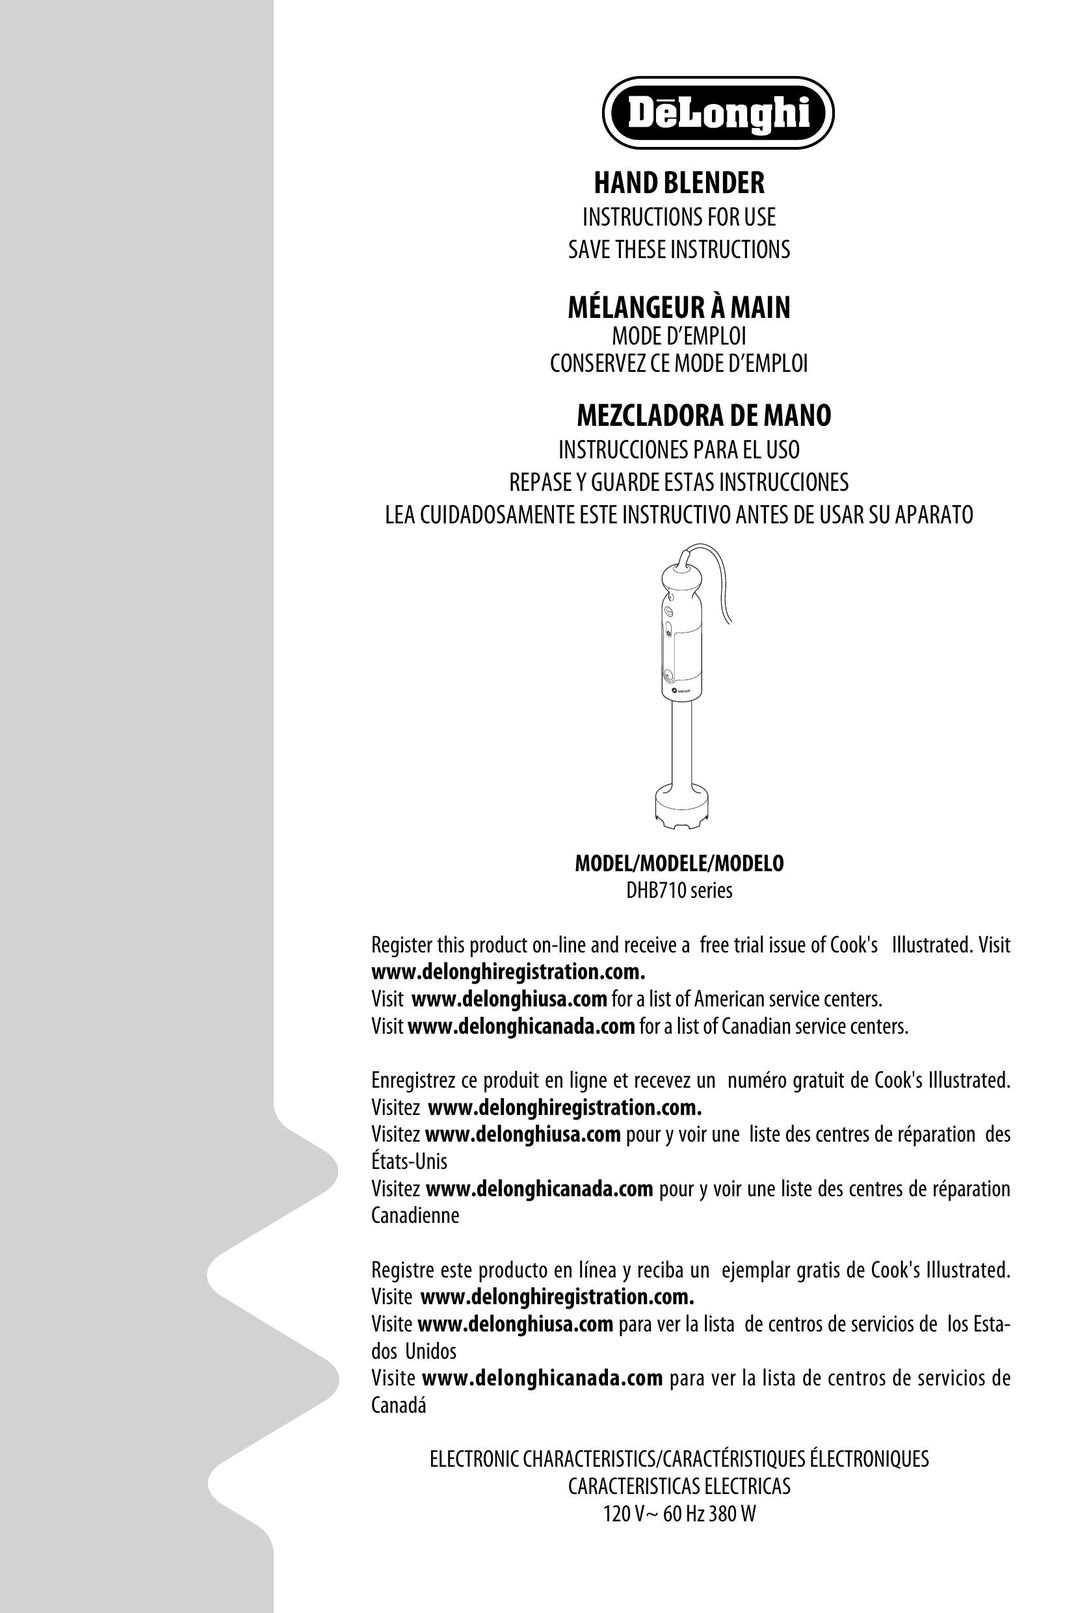 DeLonghi delonghi Blender User Manual